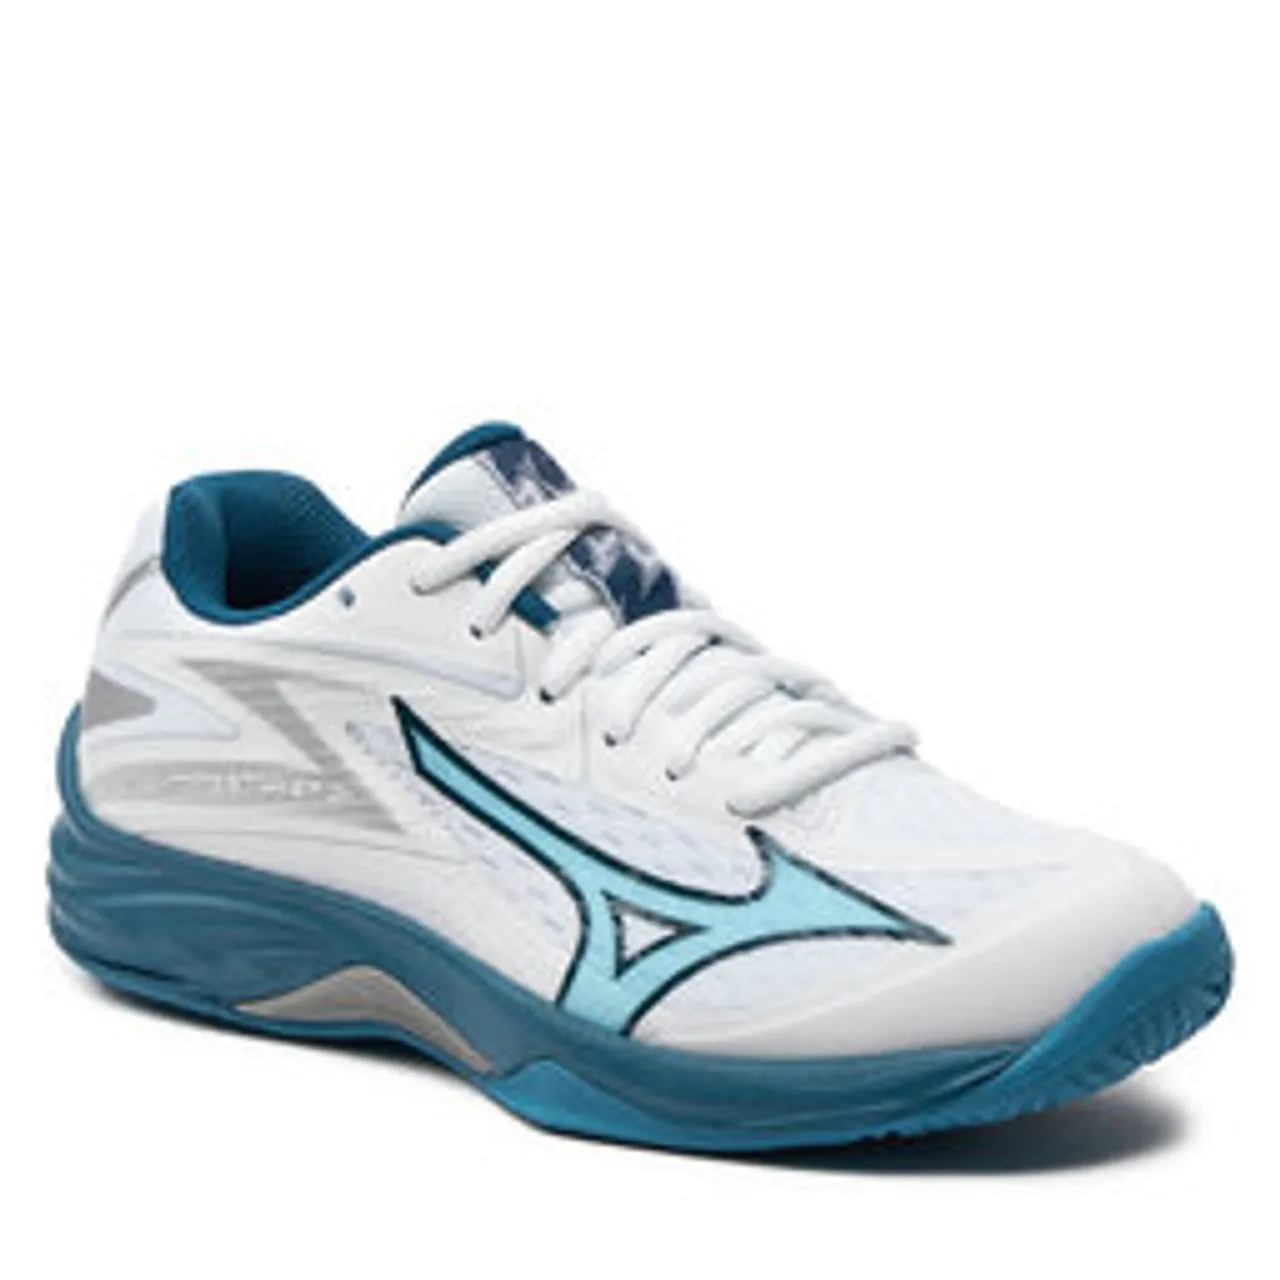 Schuhe Mizuno Lightning Star Z7 Jr V1GD2303 White/Sailor Blue/Silver 21